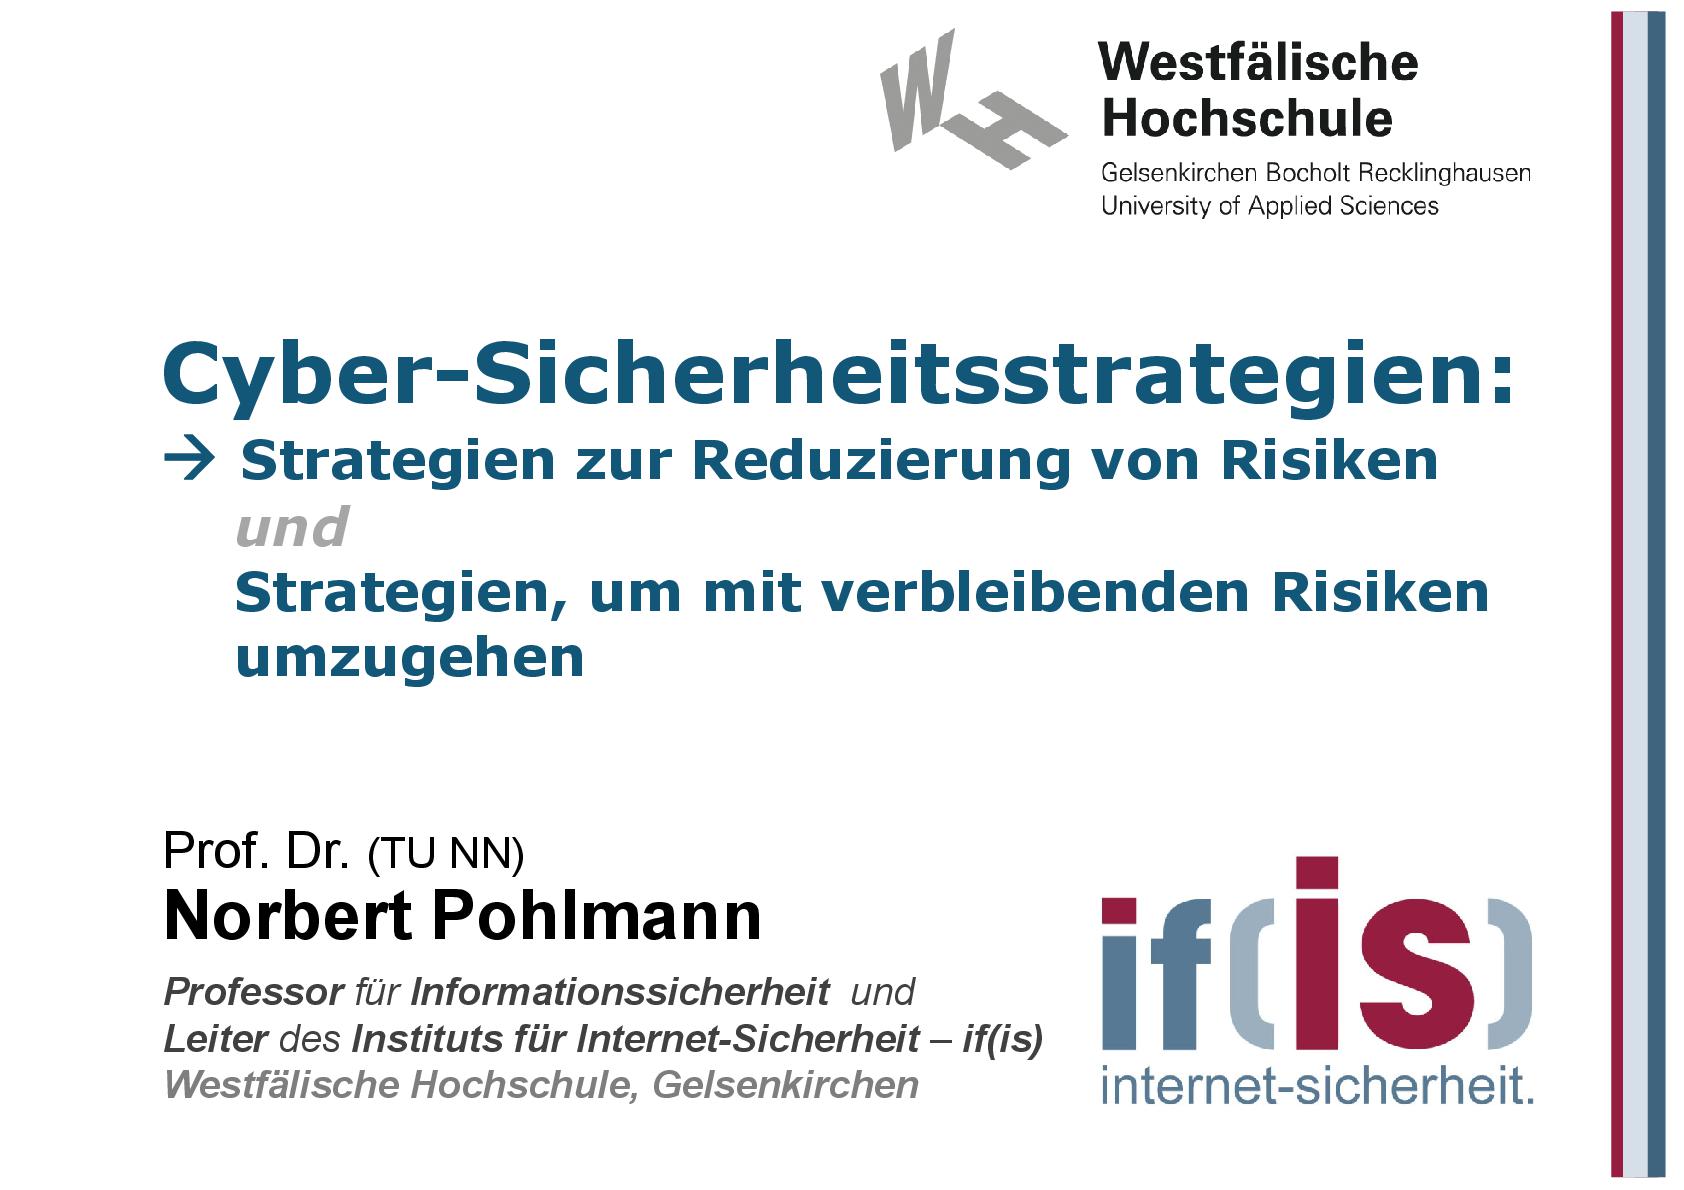 Cyber-Sicherheitsstrategien - Reduzierung von Risiken